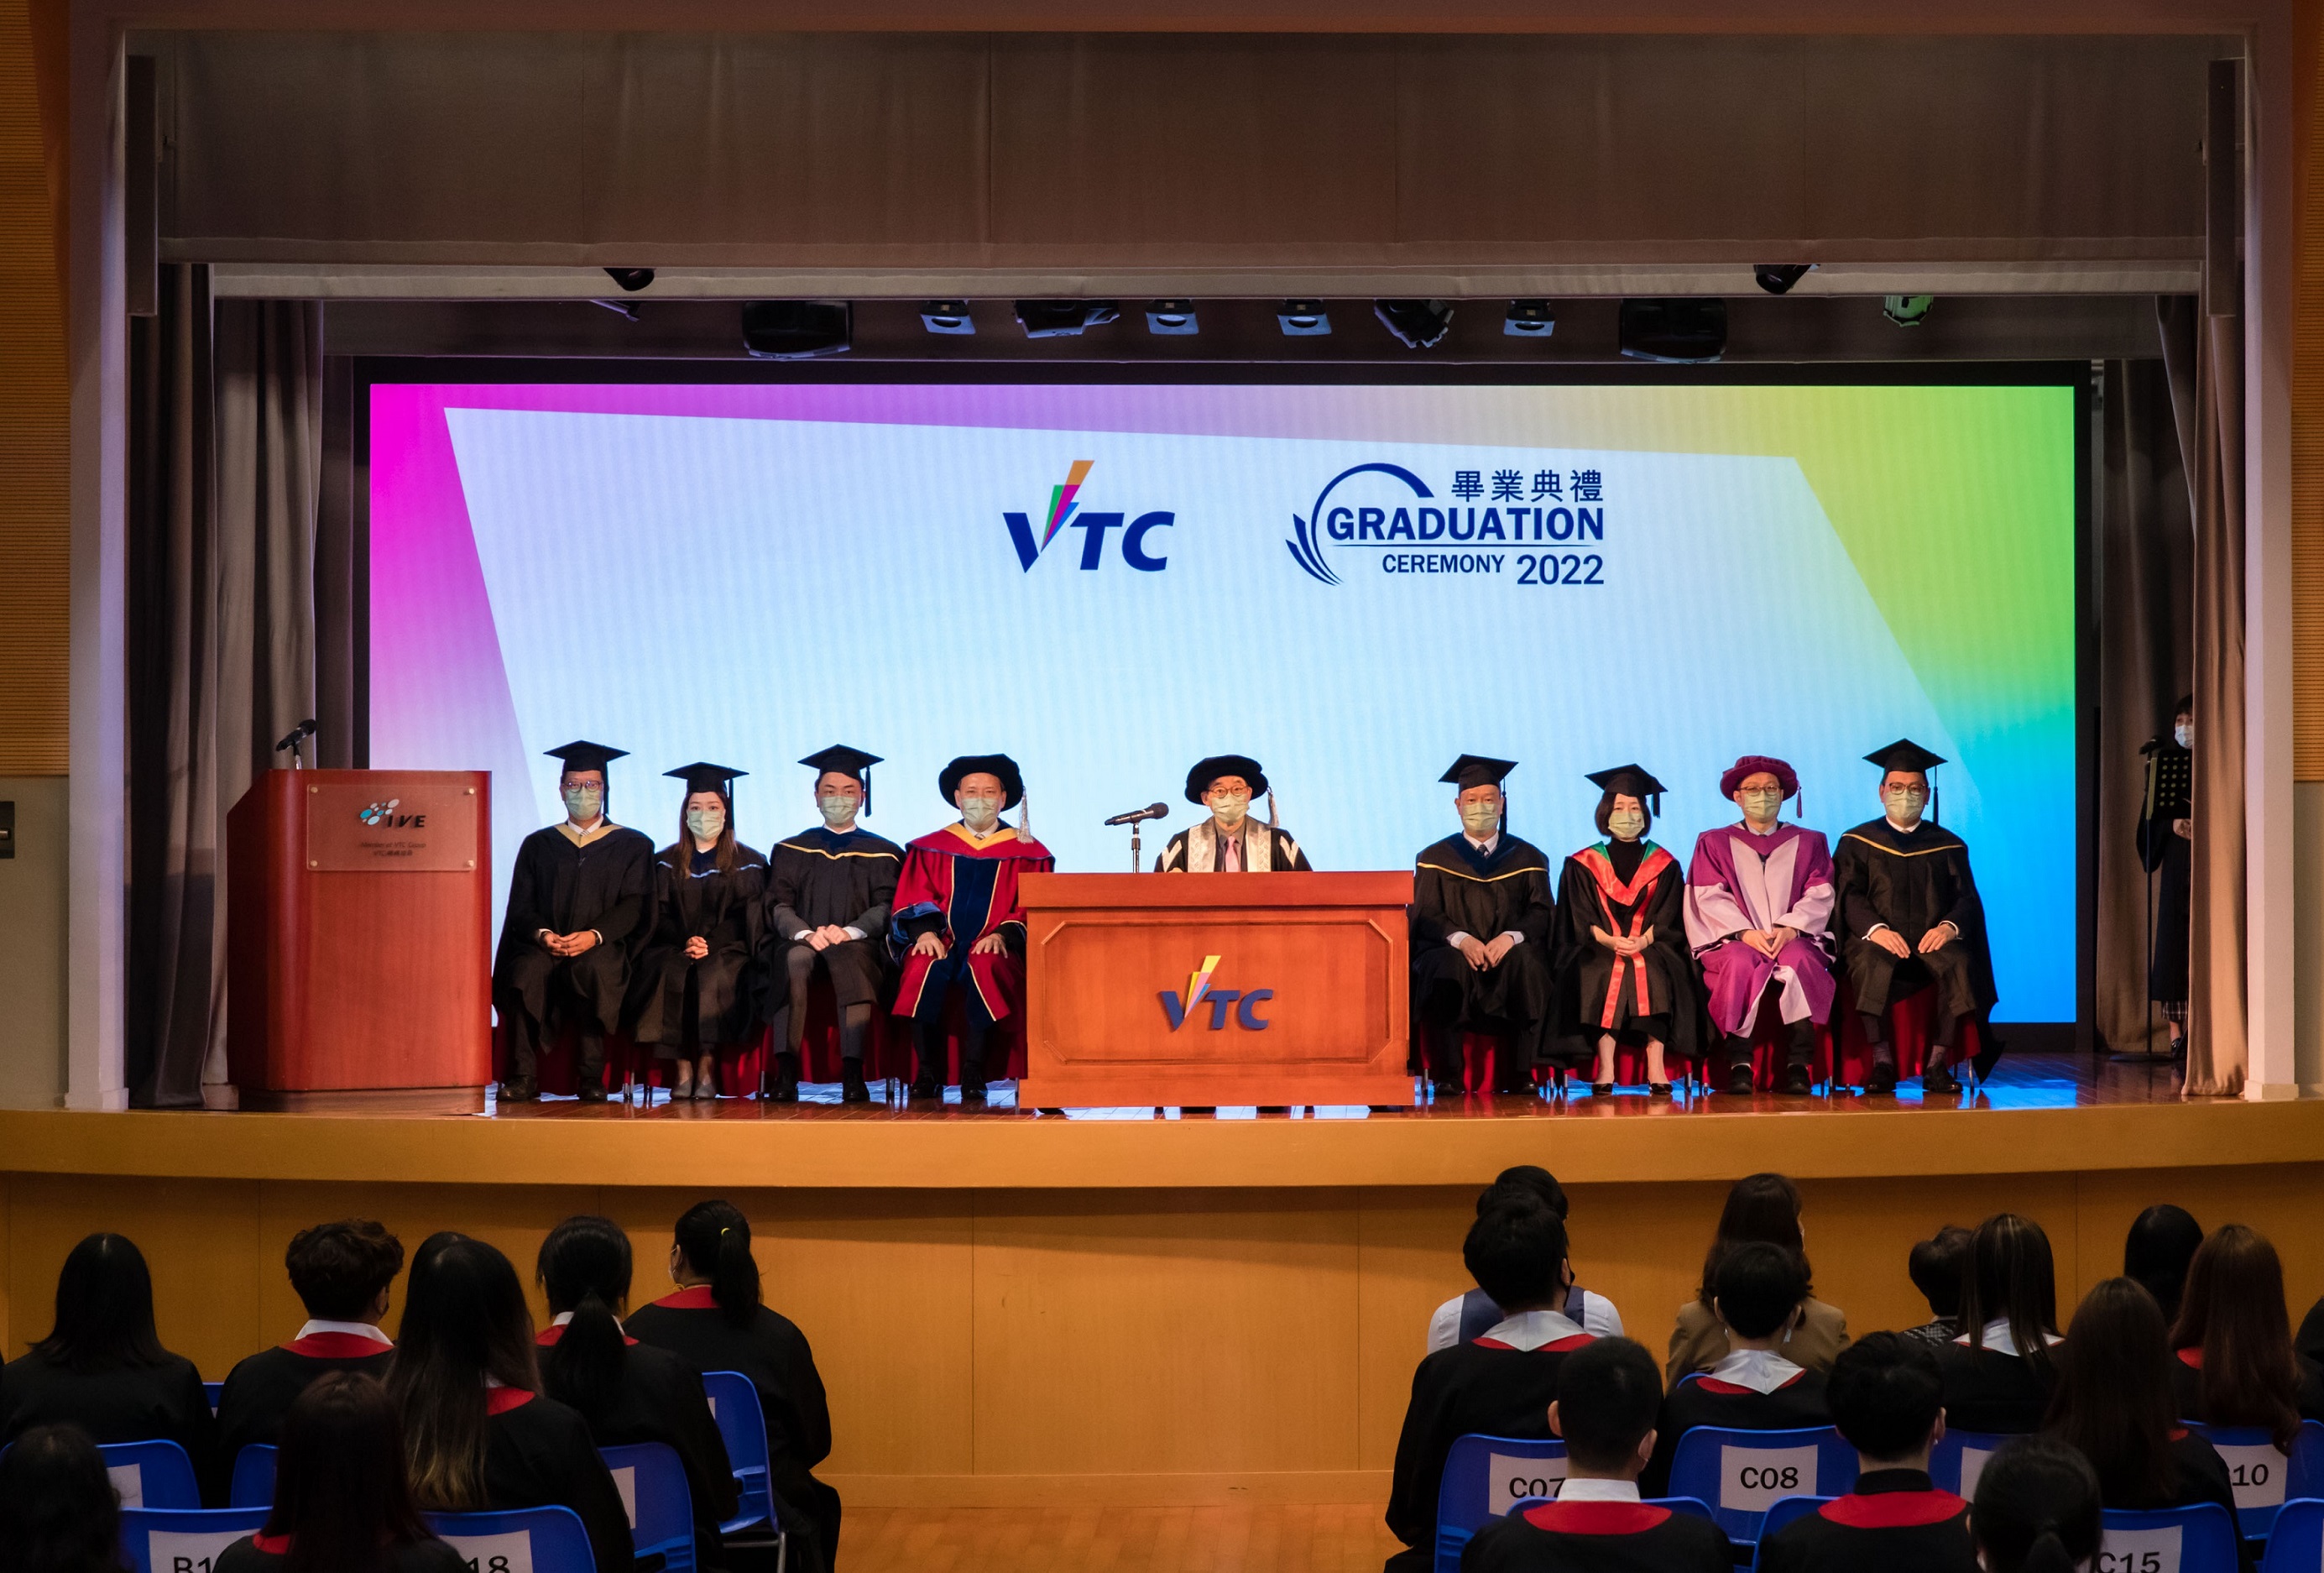 今年逾1萬6千名來自VTC多間院校成員的畢業生，會於畢業典禮獲頒授學士學位、高級文憑、基礎課程文憑、職專文憑、文憑和證書等各級學歷